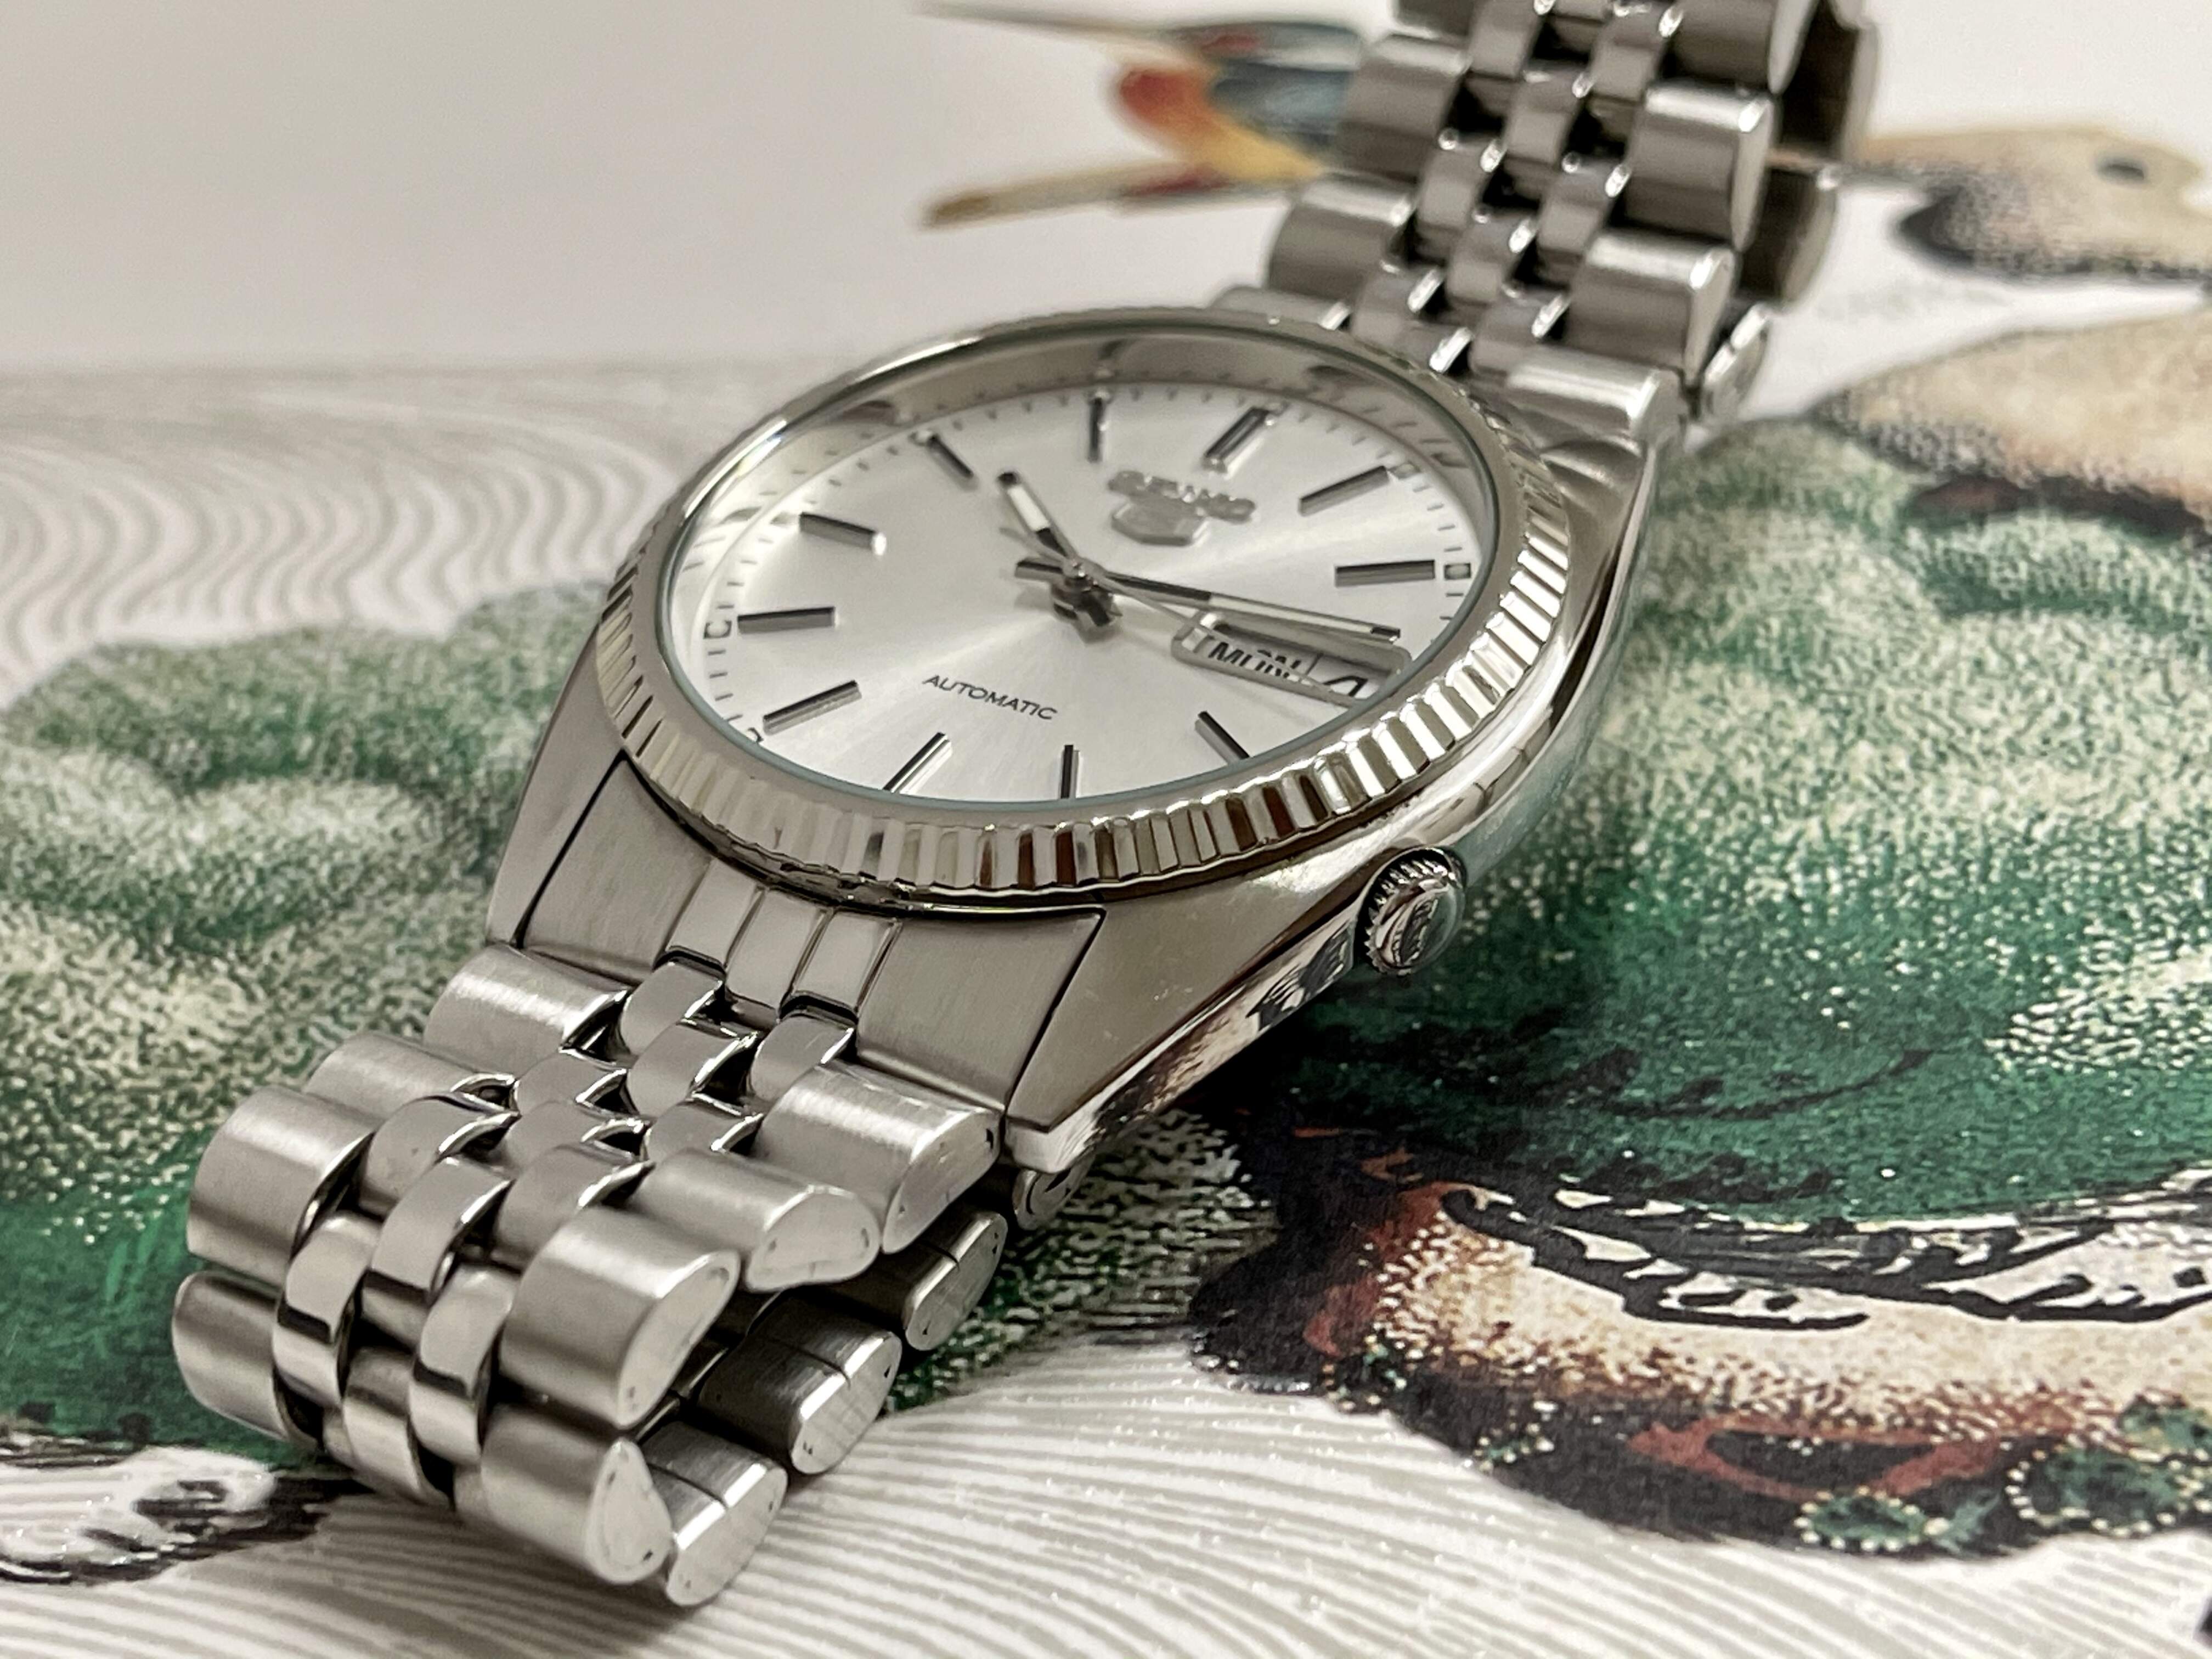 SEIKO MOD デイトジャスト風 カスタム腕時計 7S26-0500 - 腕時計(アナログ)